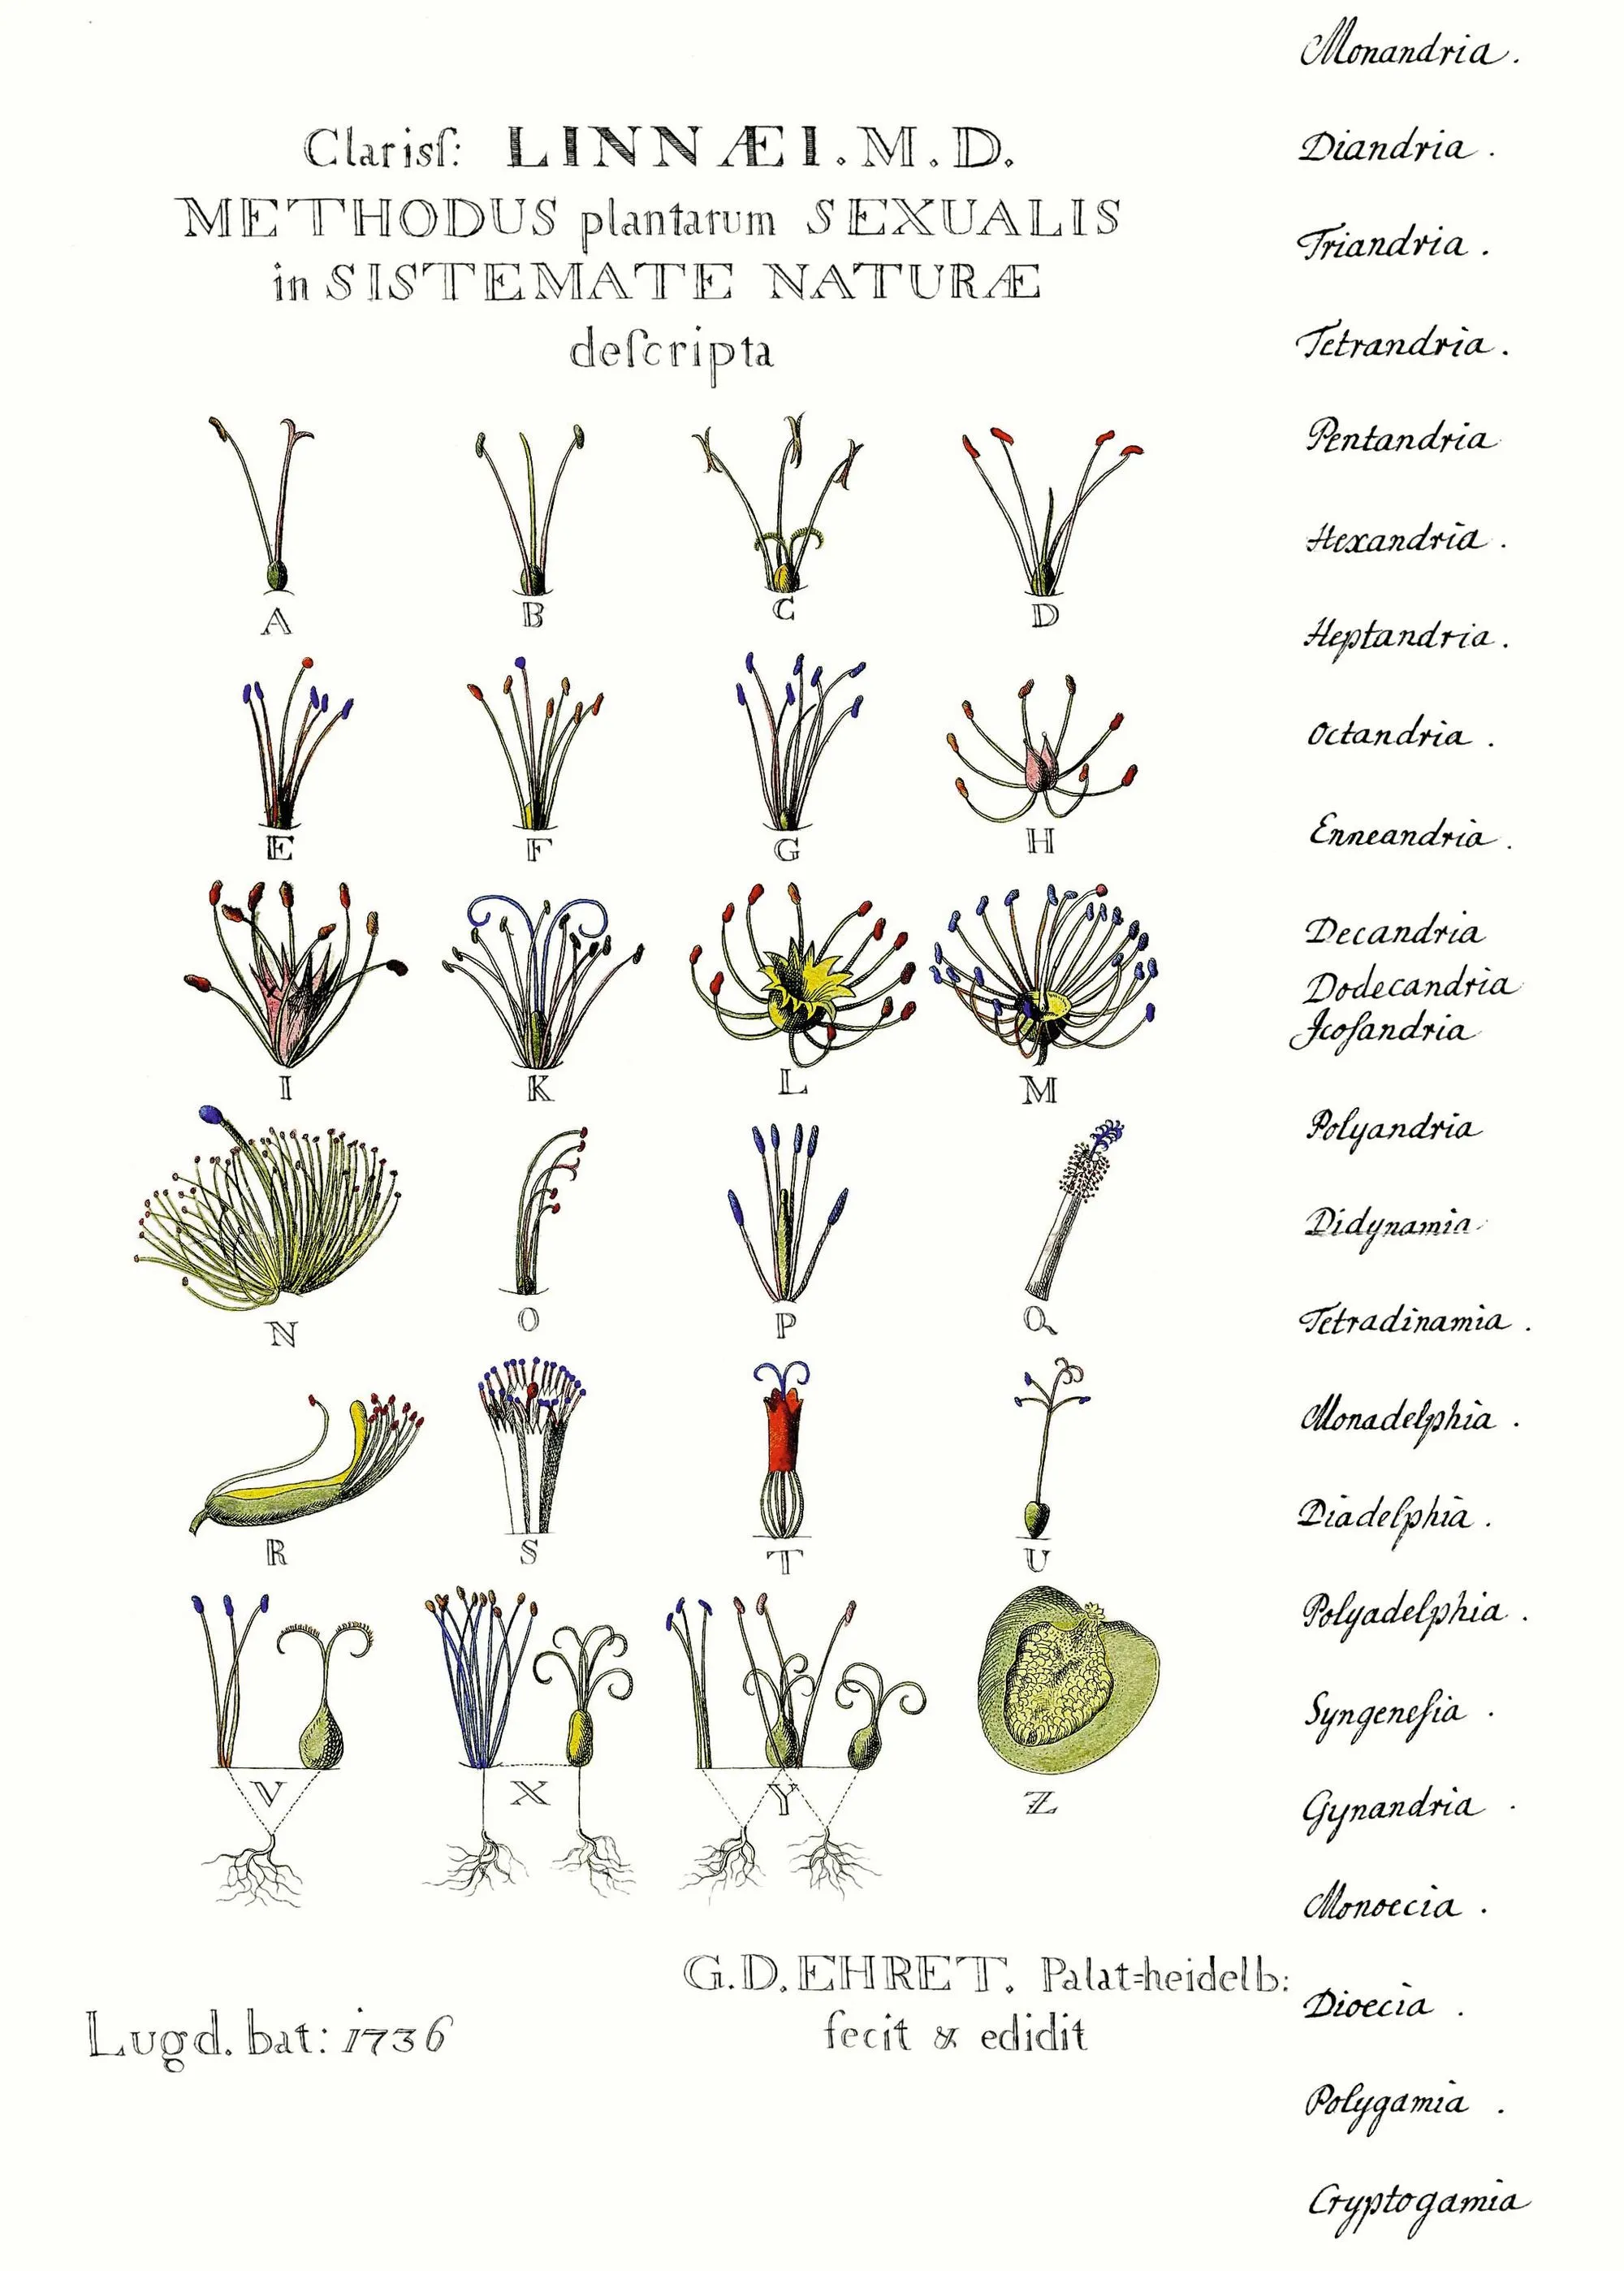 Description des organes sexuels des plantes par Linné, gravure de G. Ehret, 1736